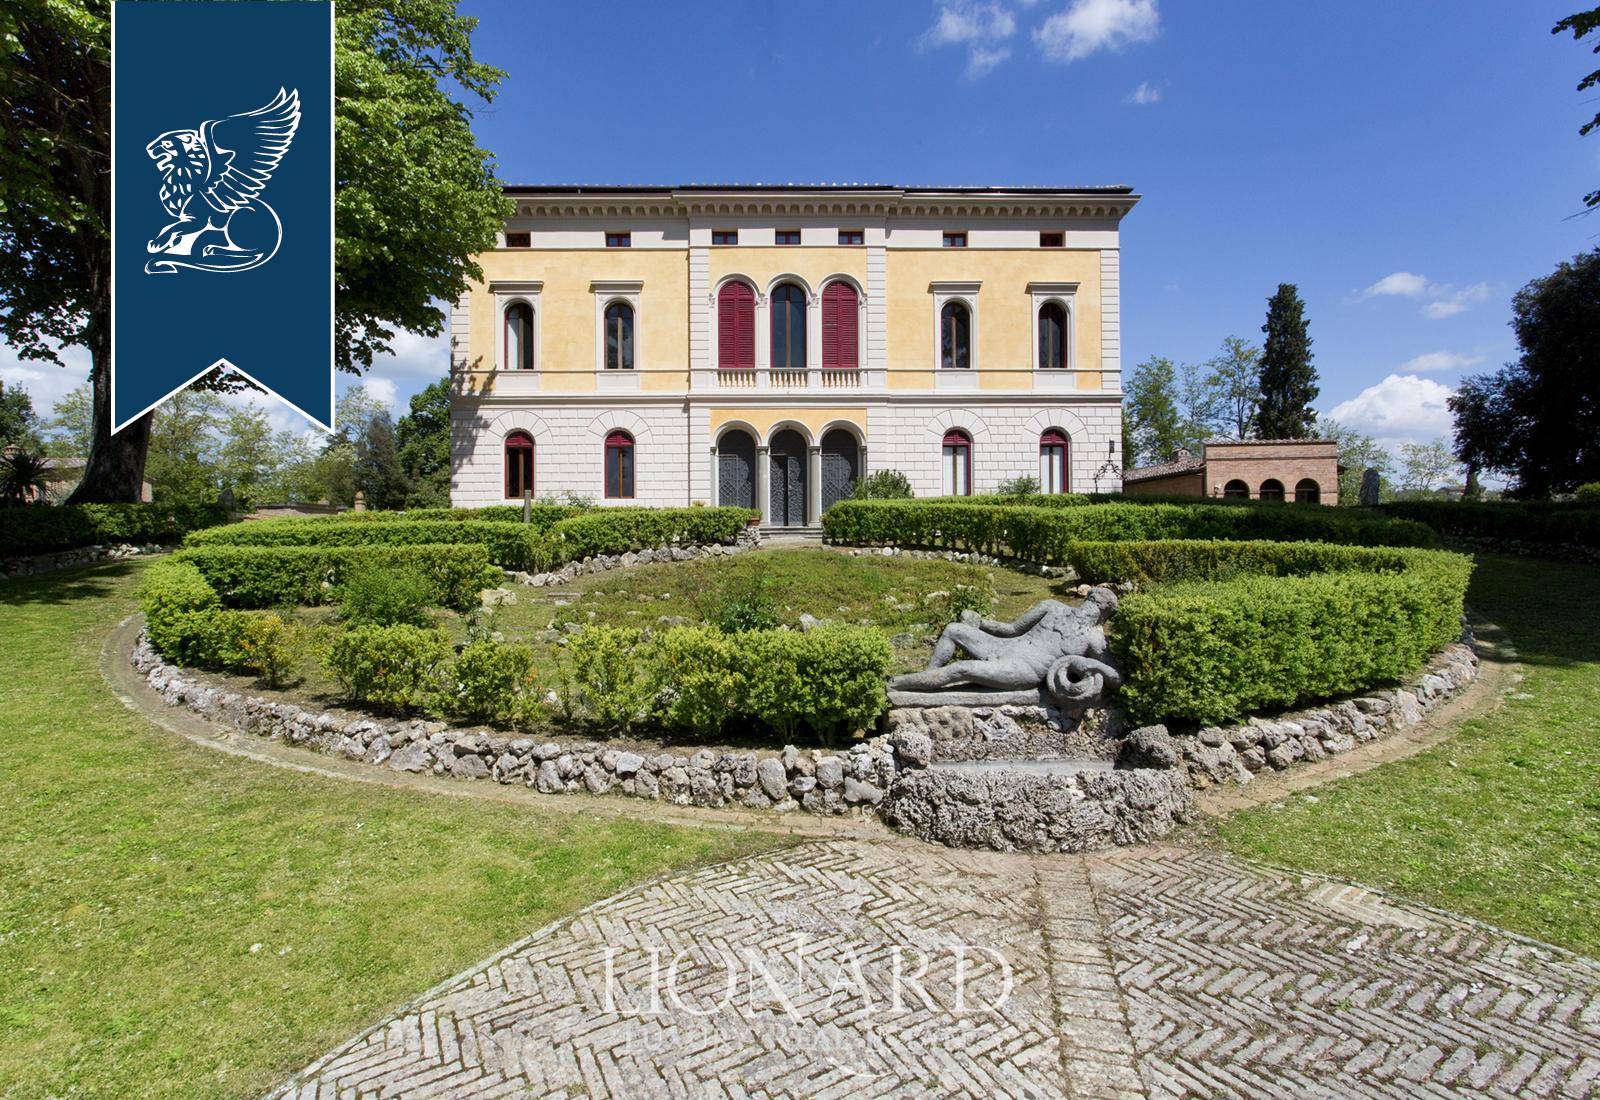 Villa in Vendita a Siena: 0 locali, 1050 mq - Foto 4